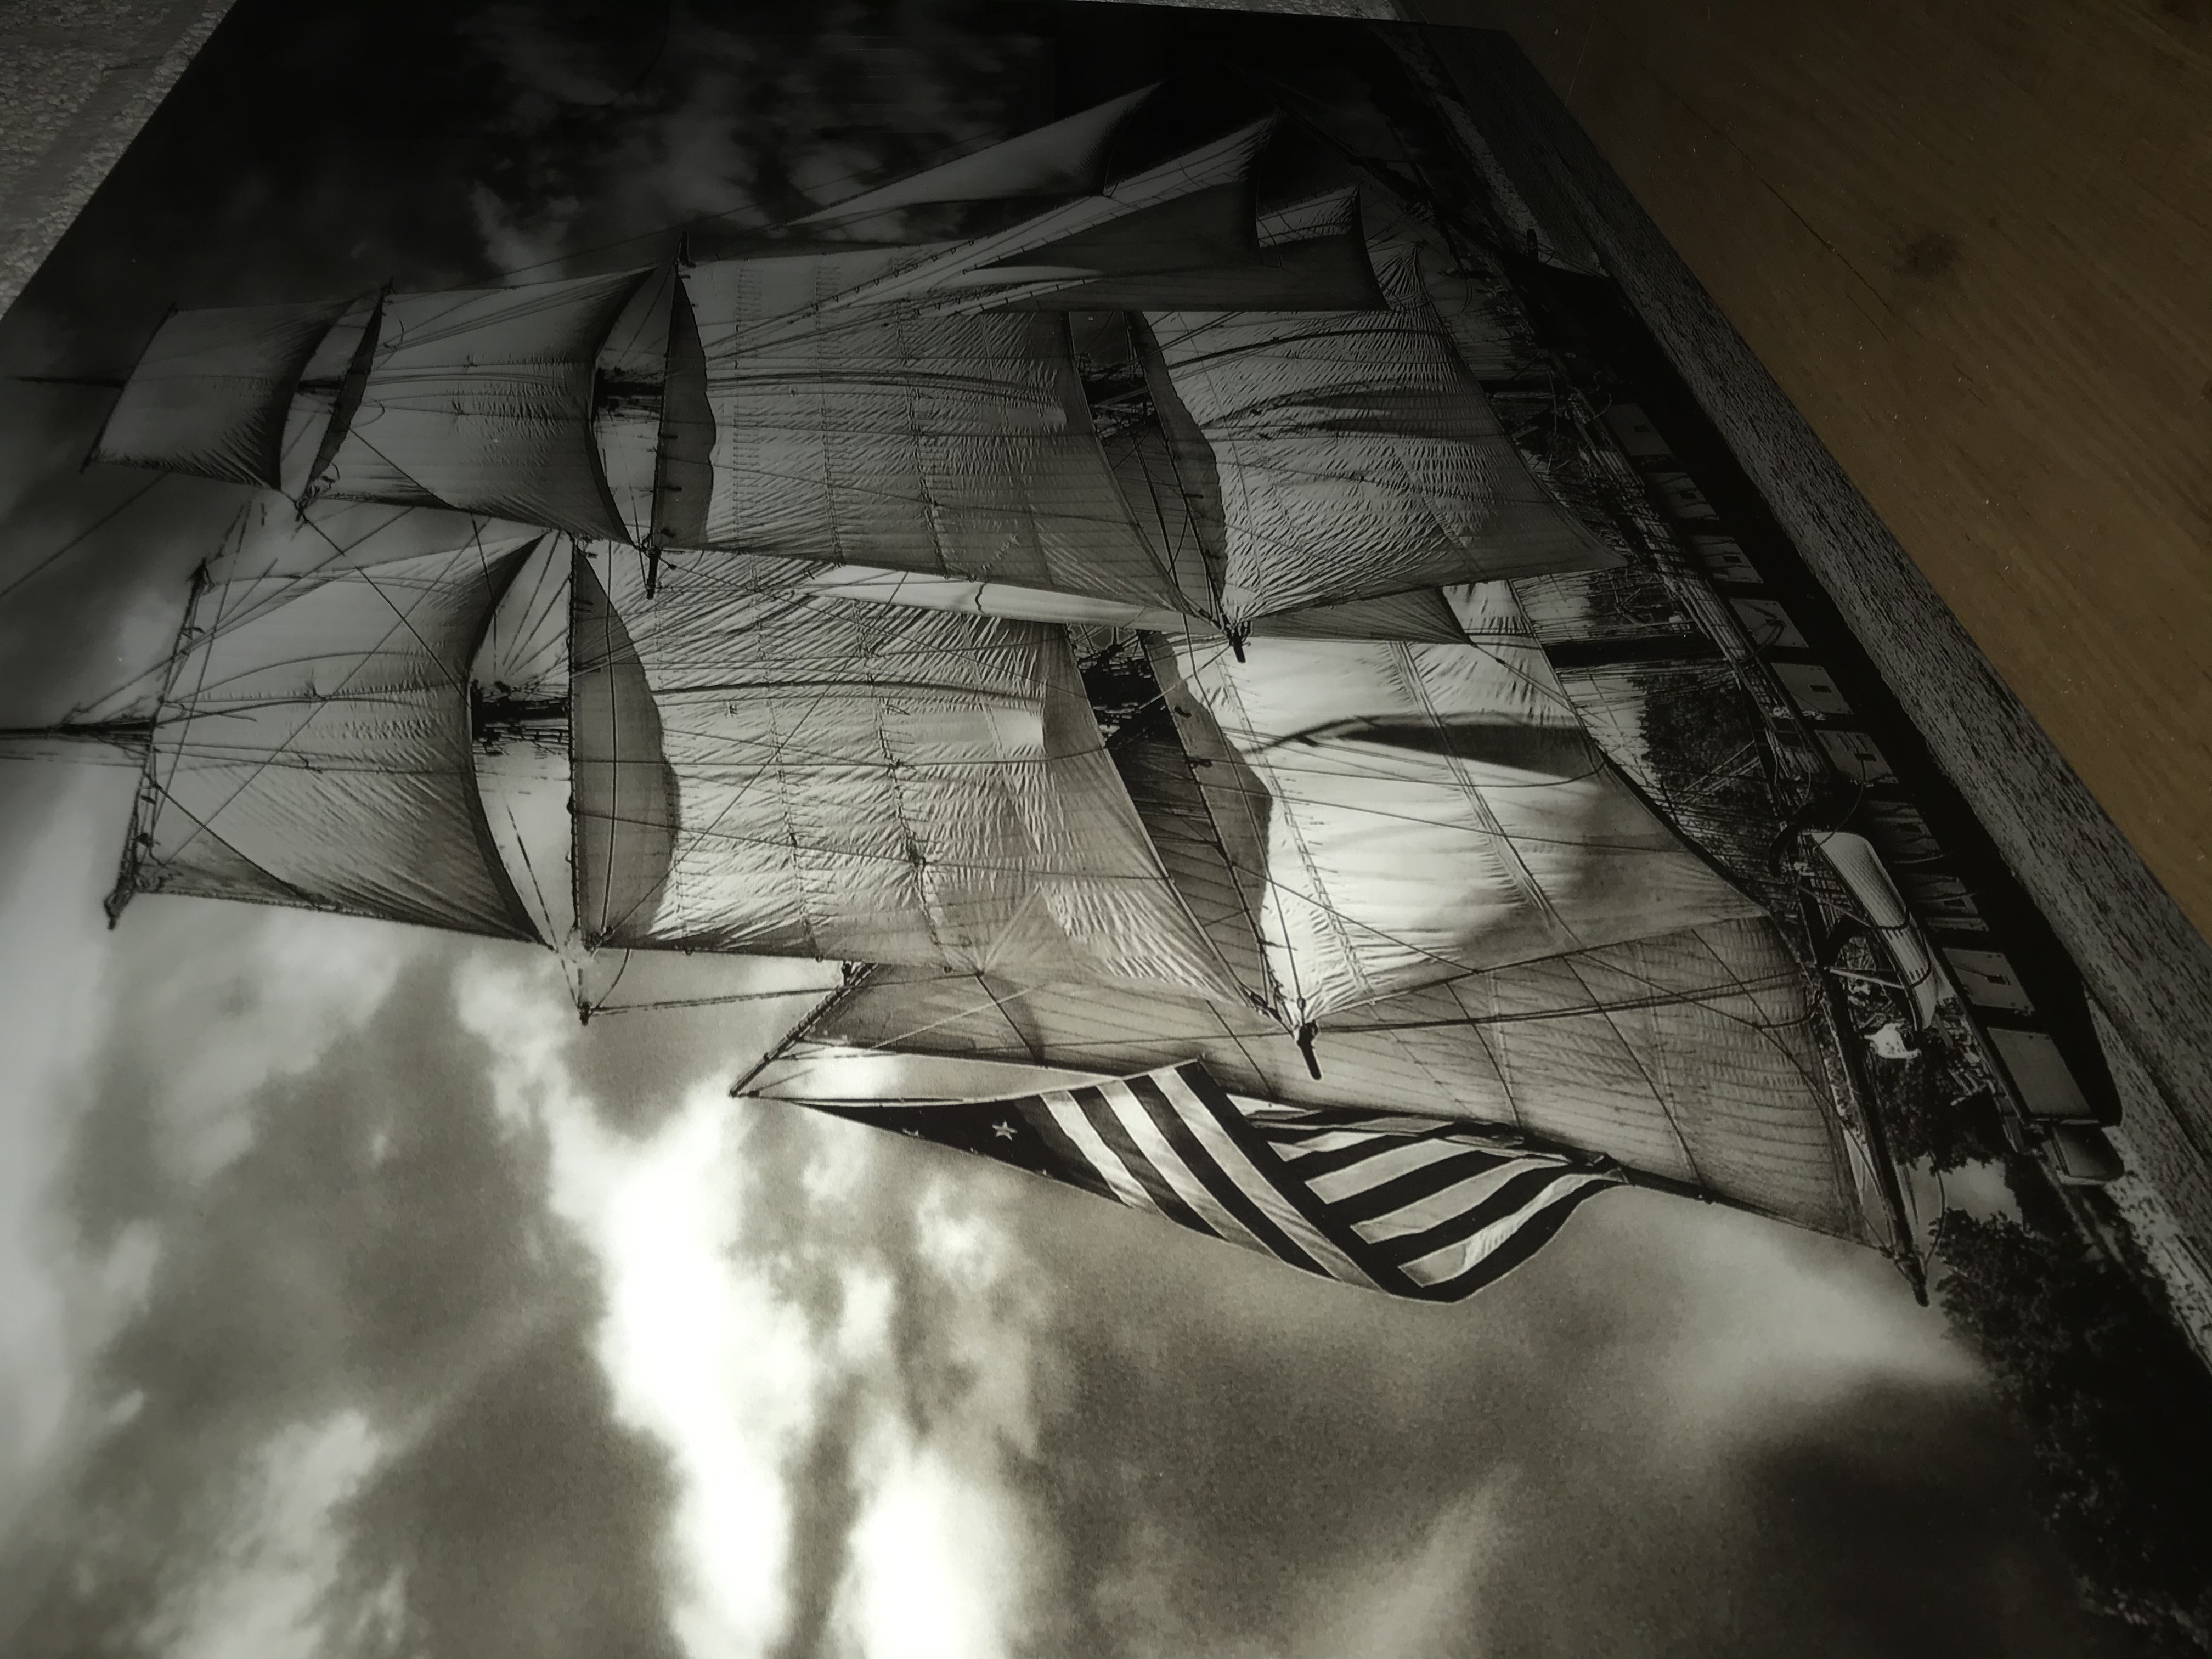 Kunst auf Glas mit einem schönen Segelschiff